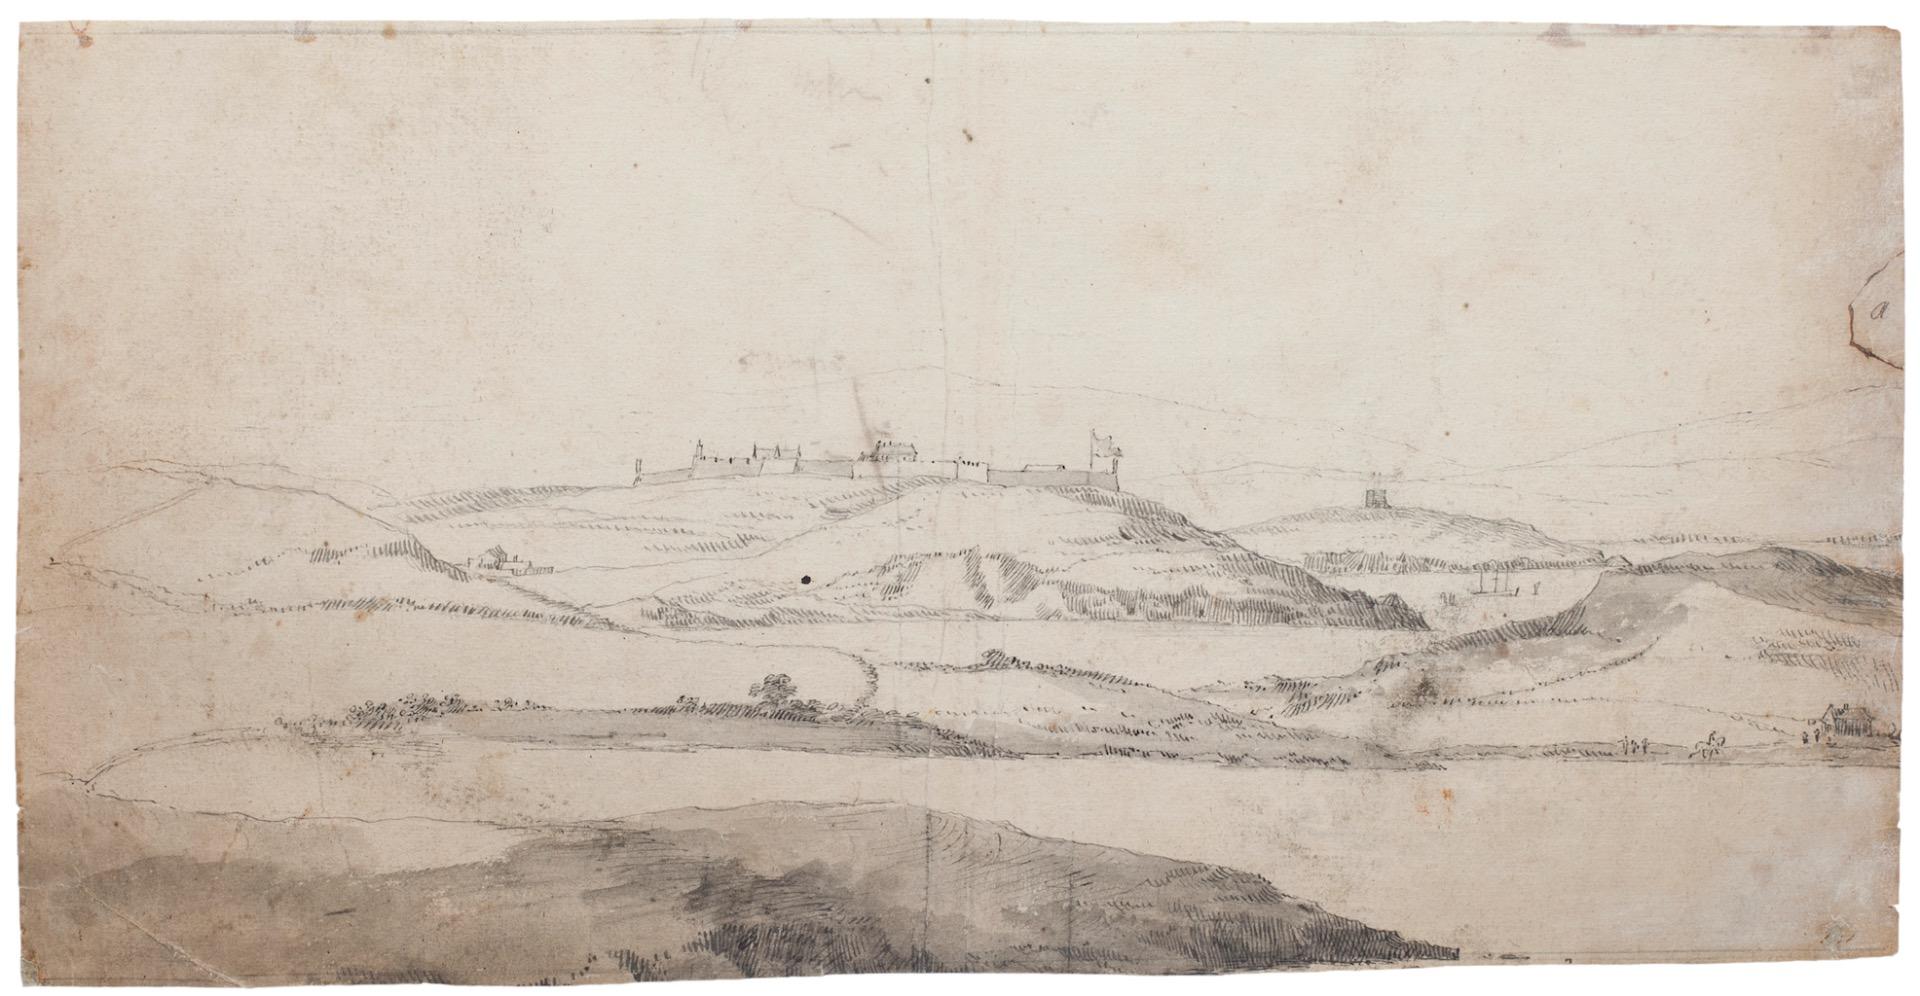 Landscape ist eine Originalzeichnung in Tusche und Aquarell von Jan Peeter Verdussen.

Guter Zustand mit Ausnahme einiger kleiner Flecken und Falten.

Jan Peeter Verdussen (1700-1767) Flämischer Maler, Zeichner und Grafiker, der vor allem für seine